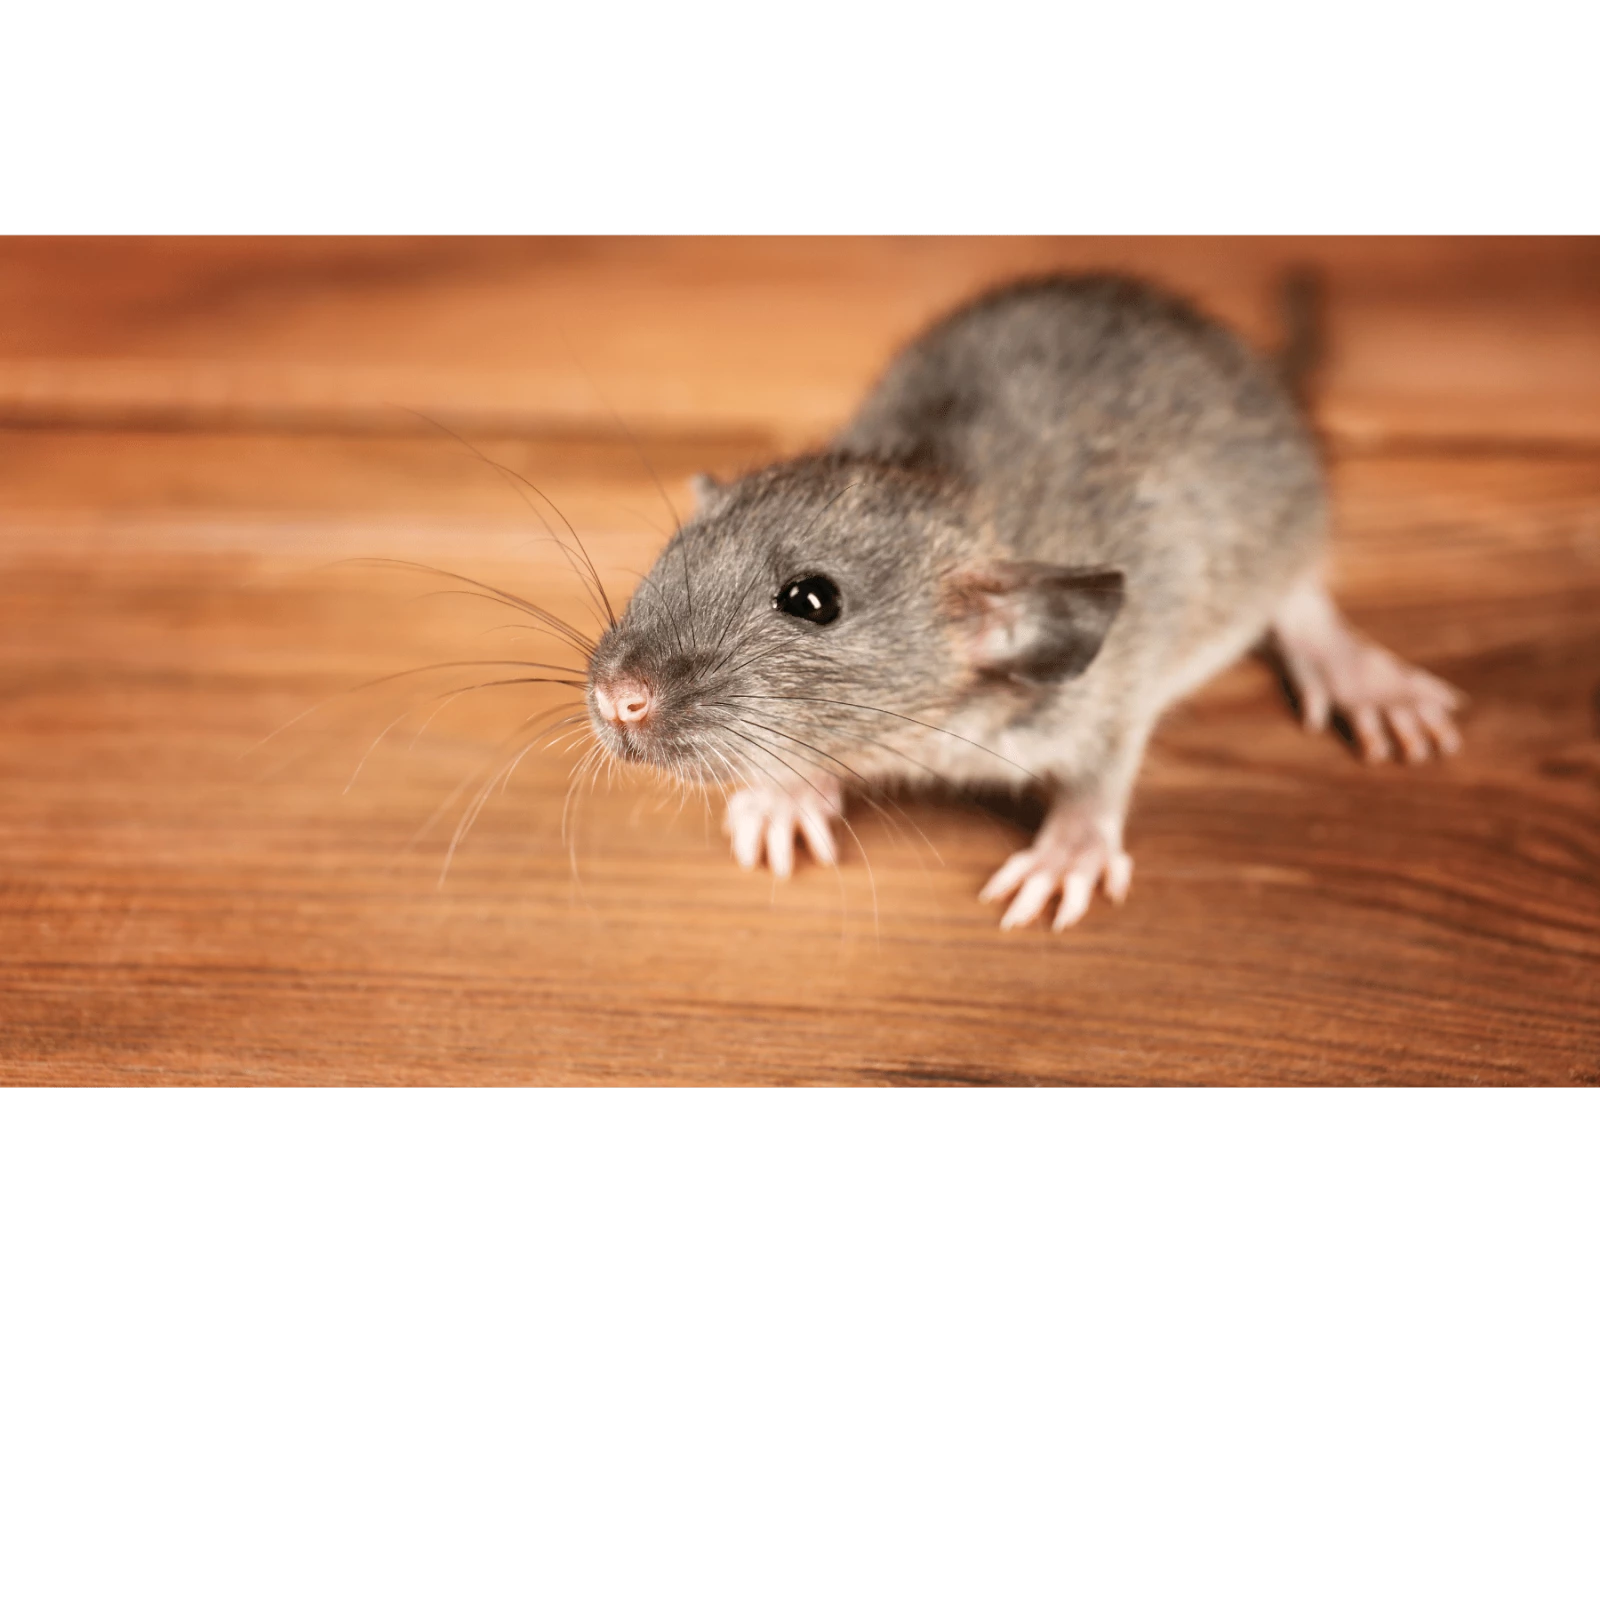 Tìm hiểu cách sử dụng thuốc diệt chuột hiệu quả